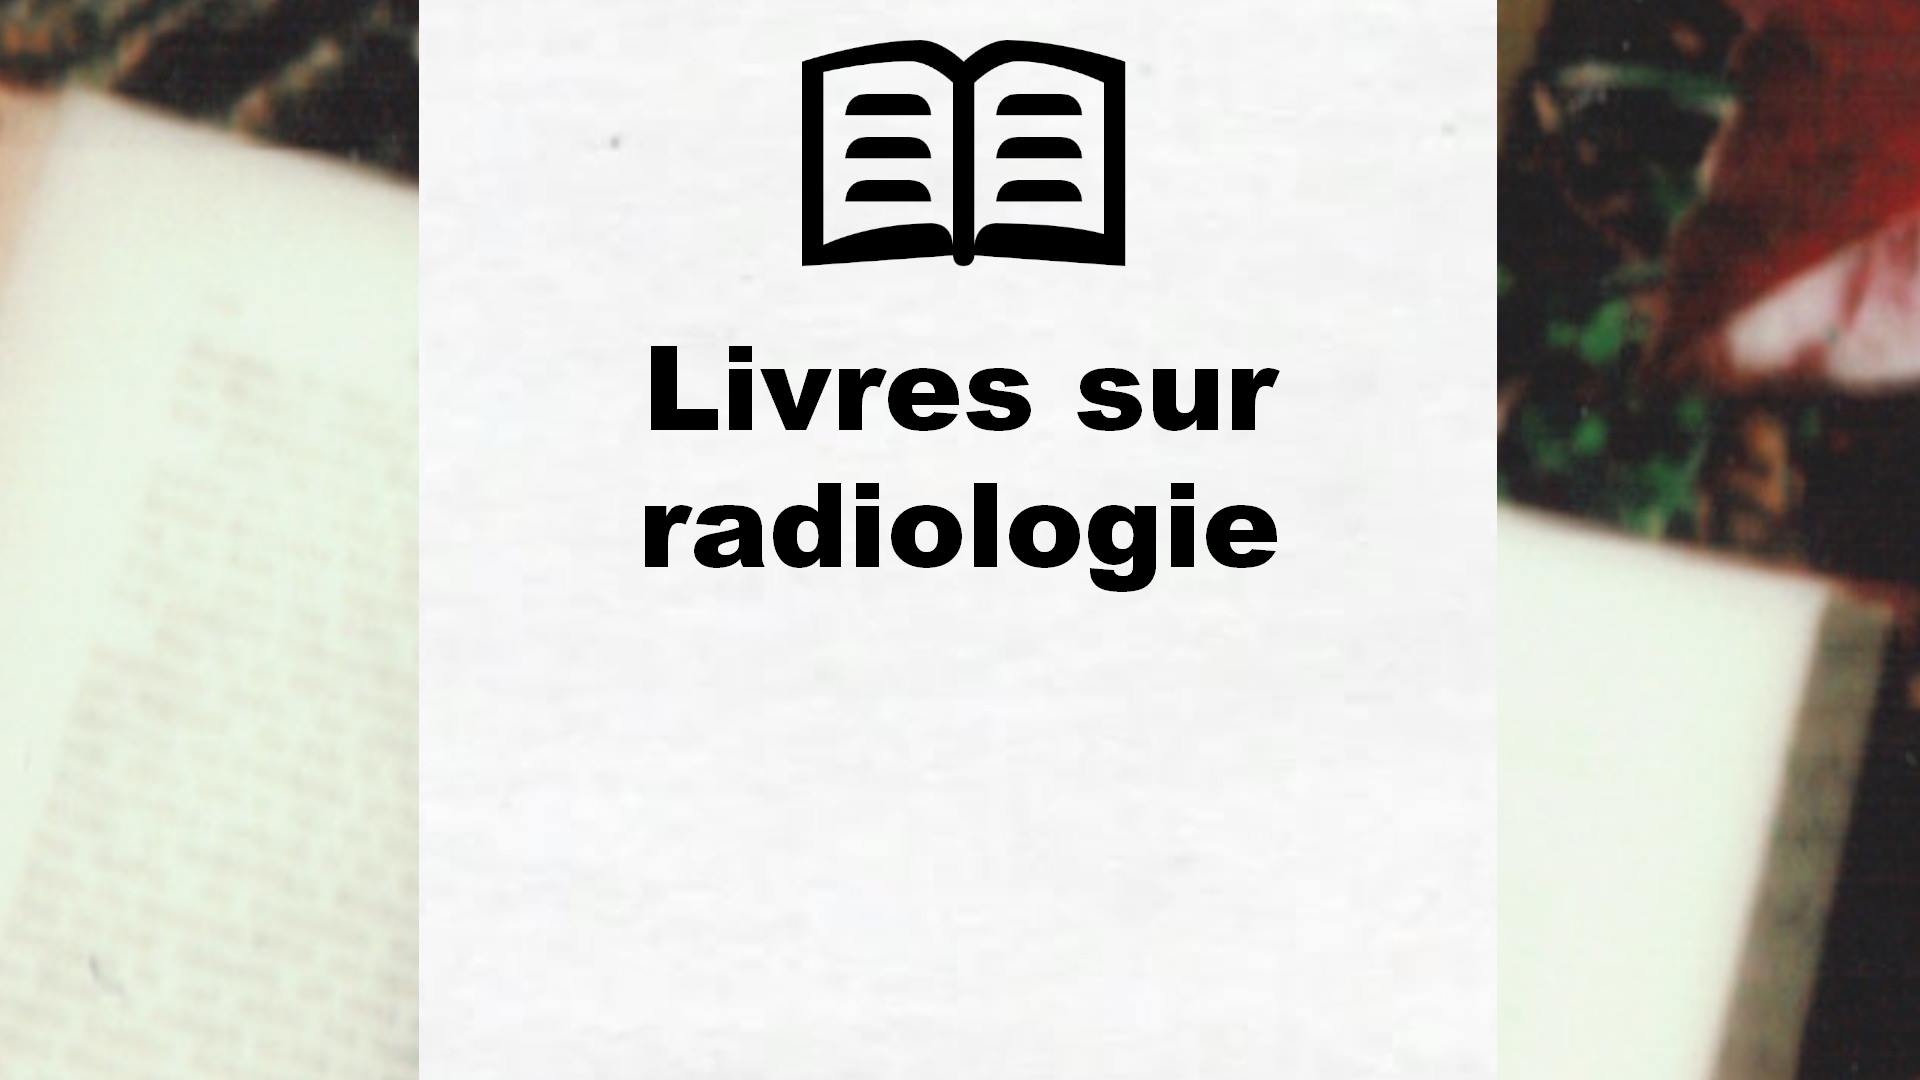 Livres sur radiologie